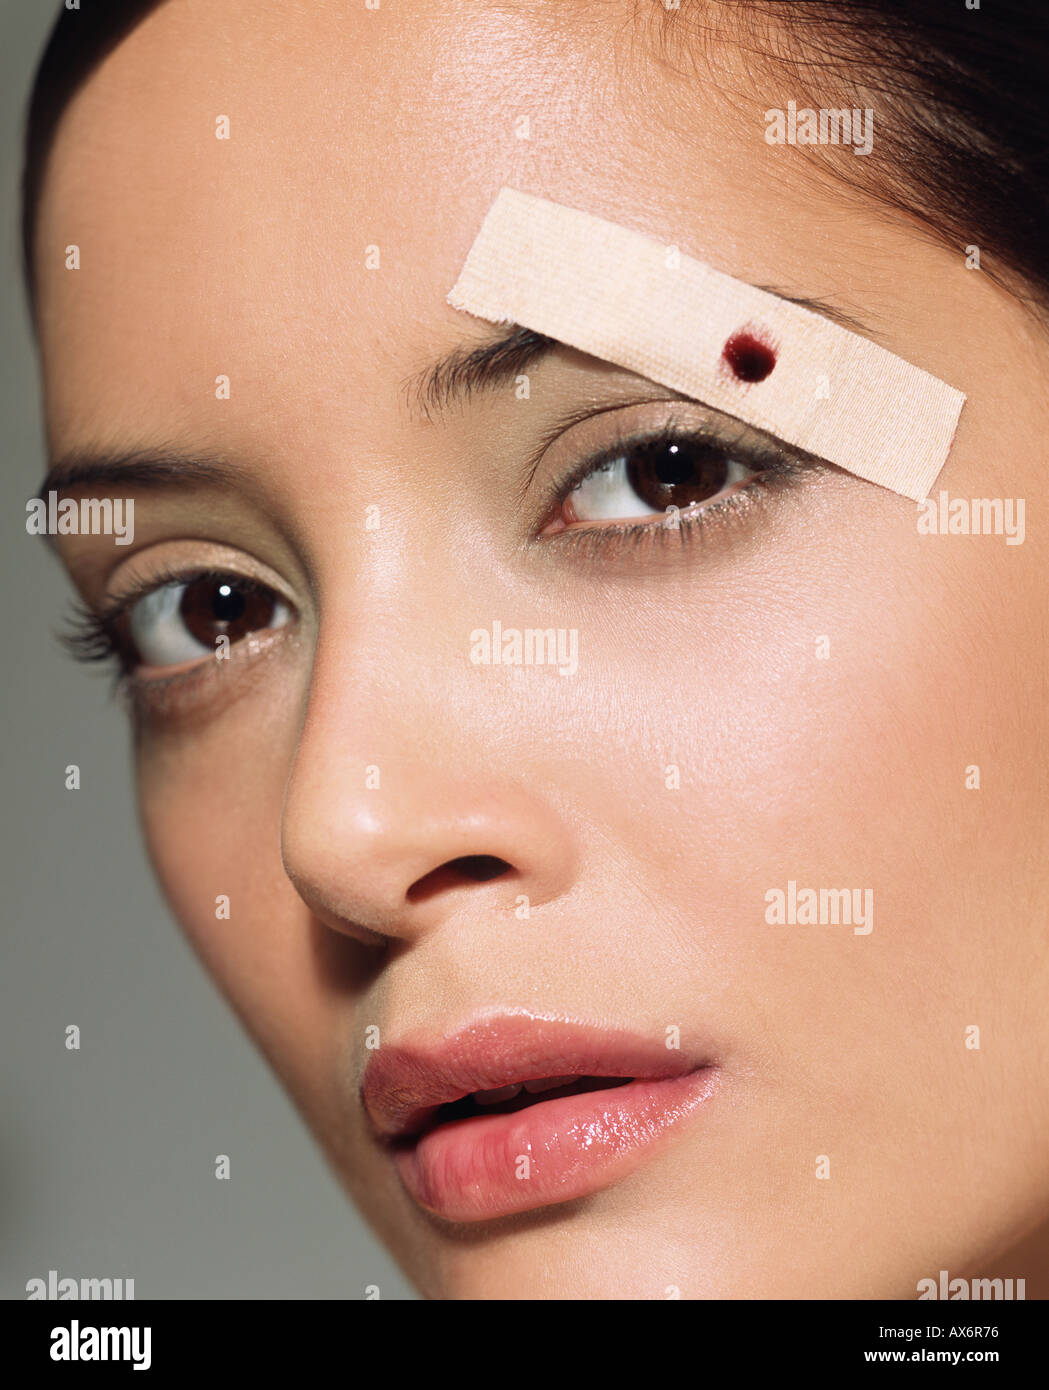 Frau mit Pflaster auf ihre Augenbrauen Stockfotografie - Alamy